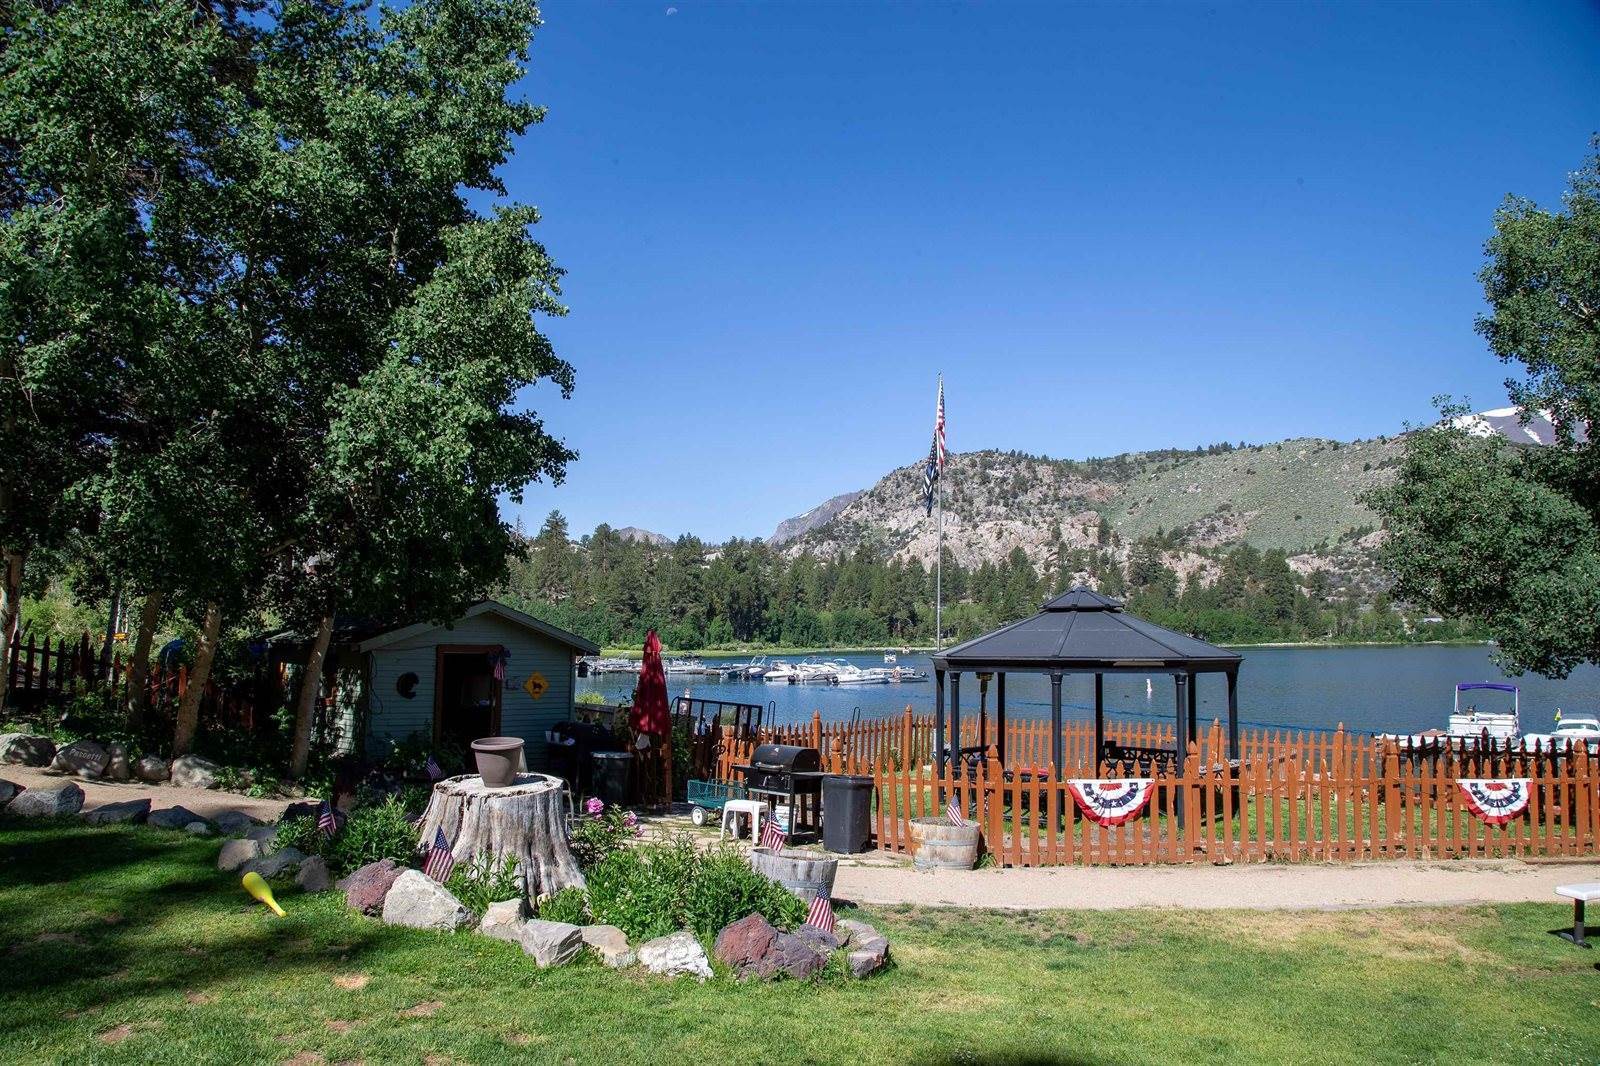 120 Big Rock Road, #Big Rock Resort, June Lake, CA 93529